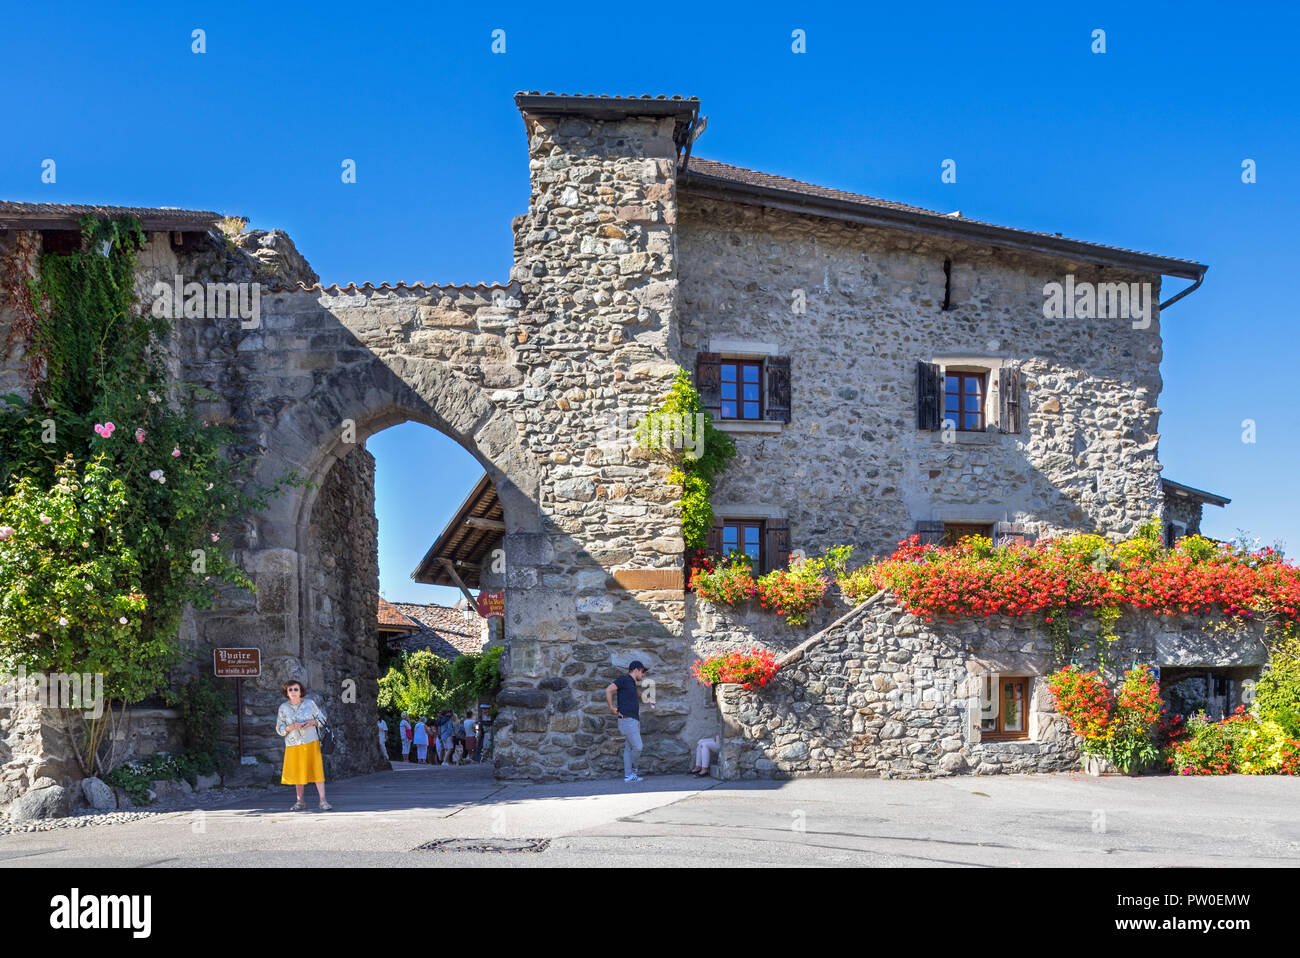 Porte de Thonon / porte de Rovorée, town gate in the medieval village Yvoire, Haute-Savoie, Auvergne-Rhône-Alpes, France Stock Photo